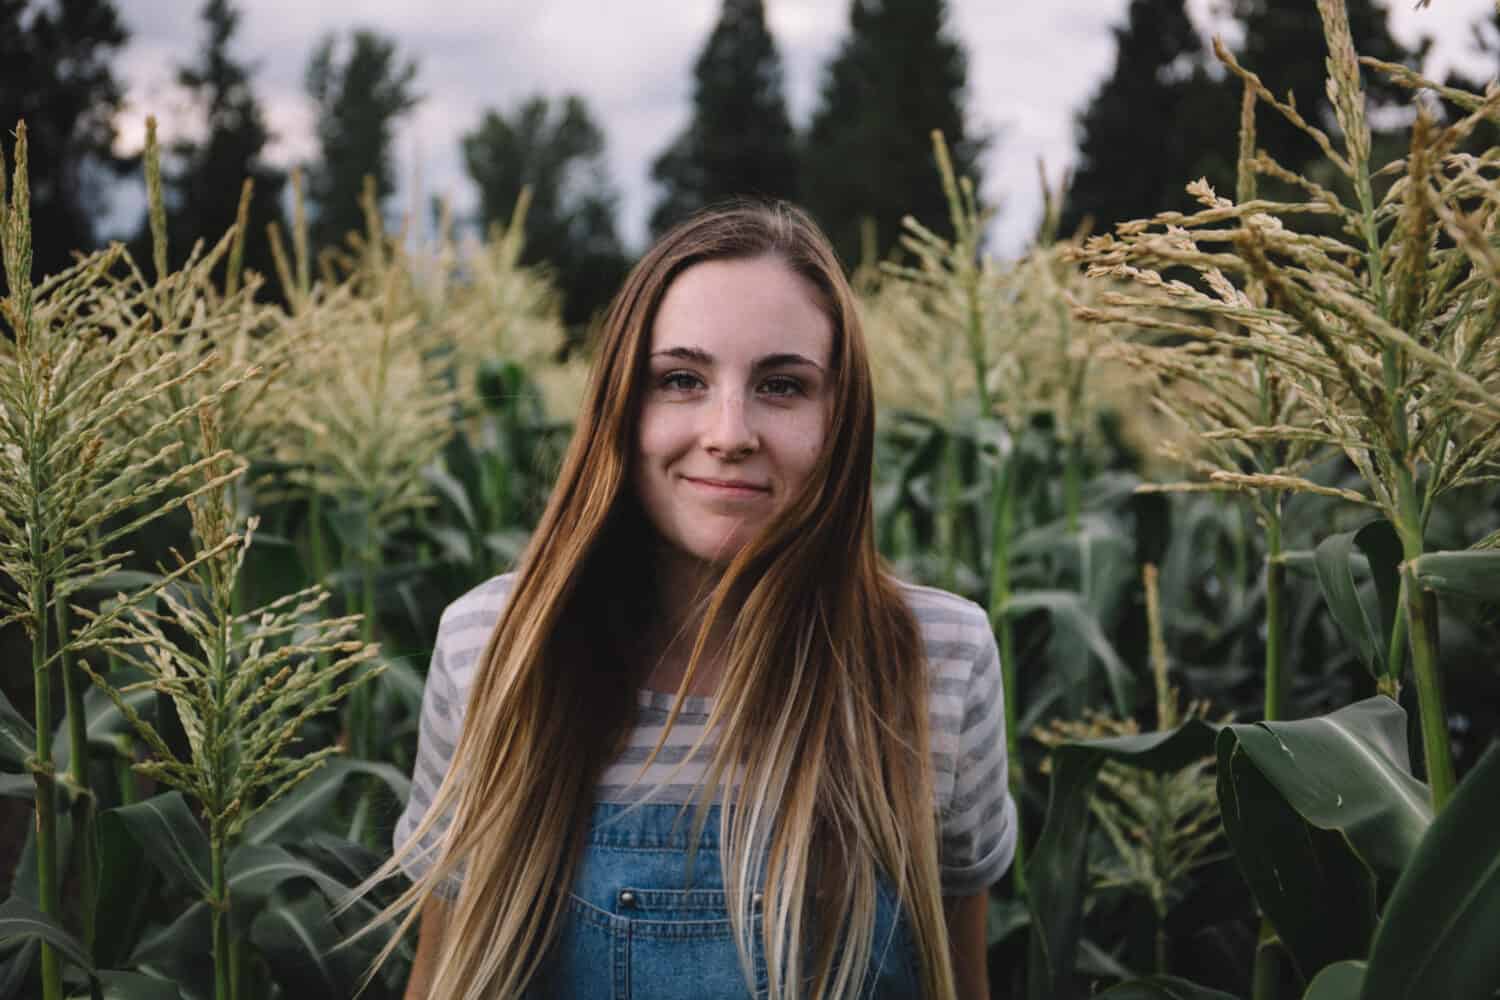 Emily Mandagie standing in corn field